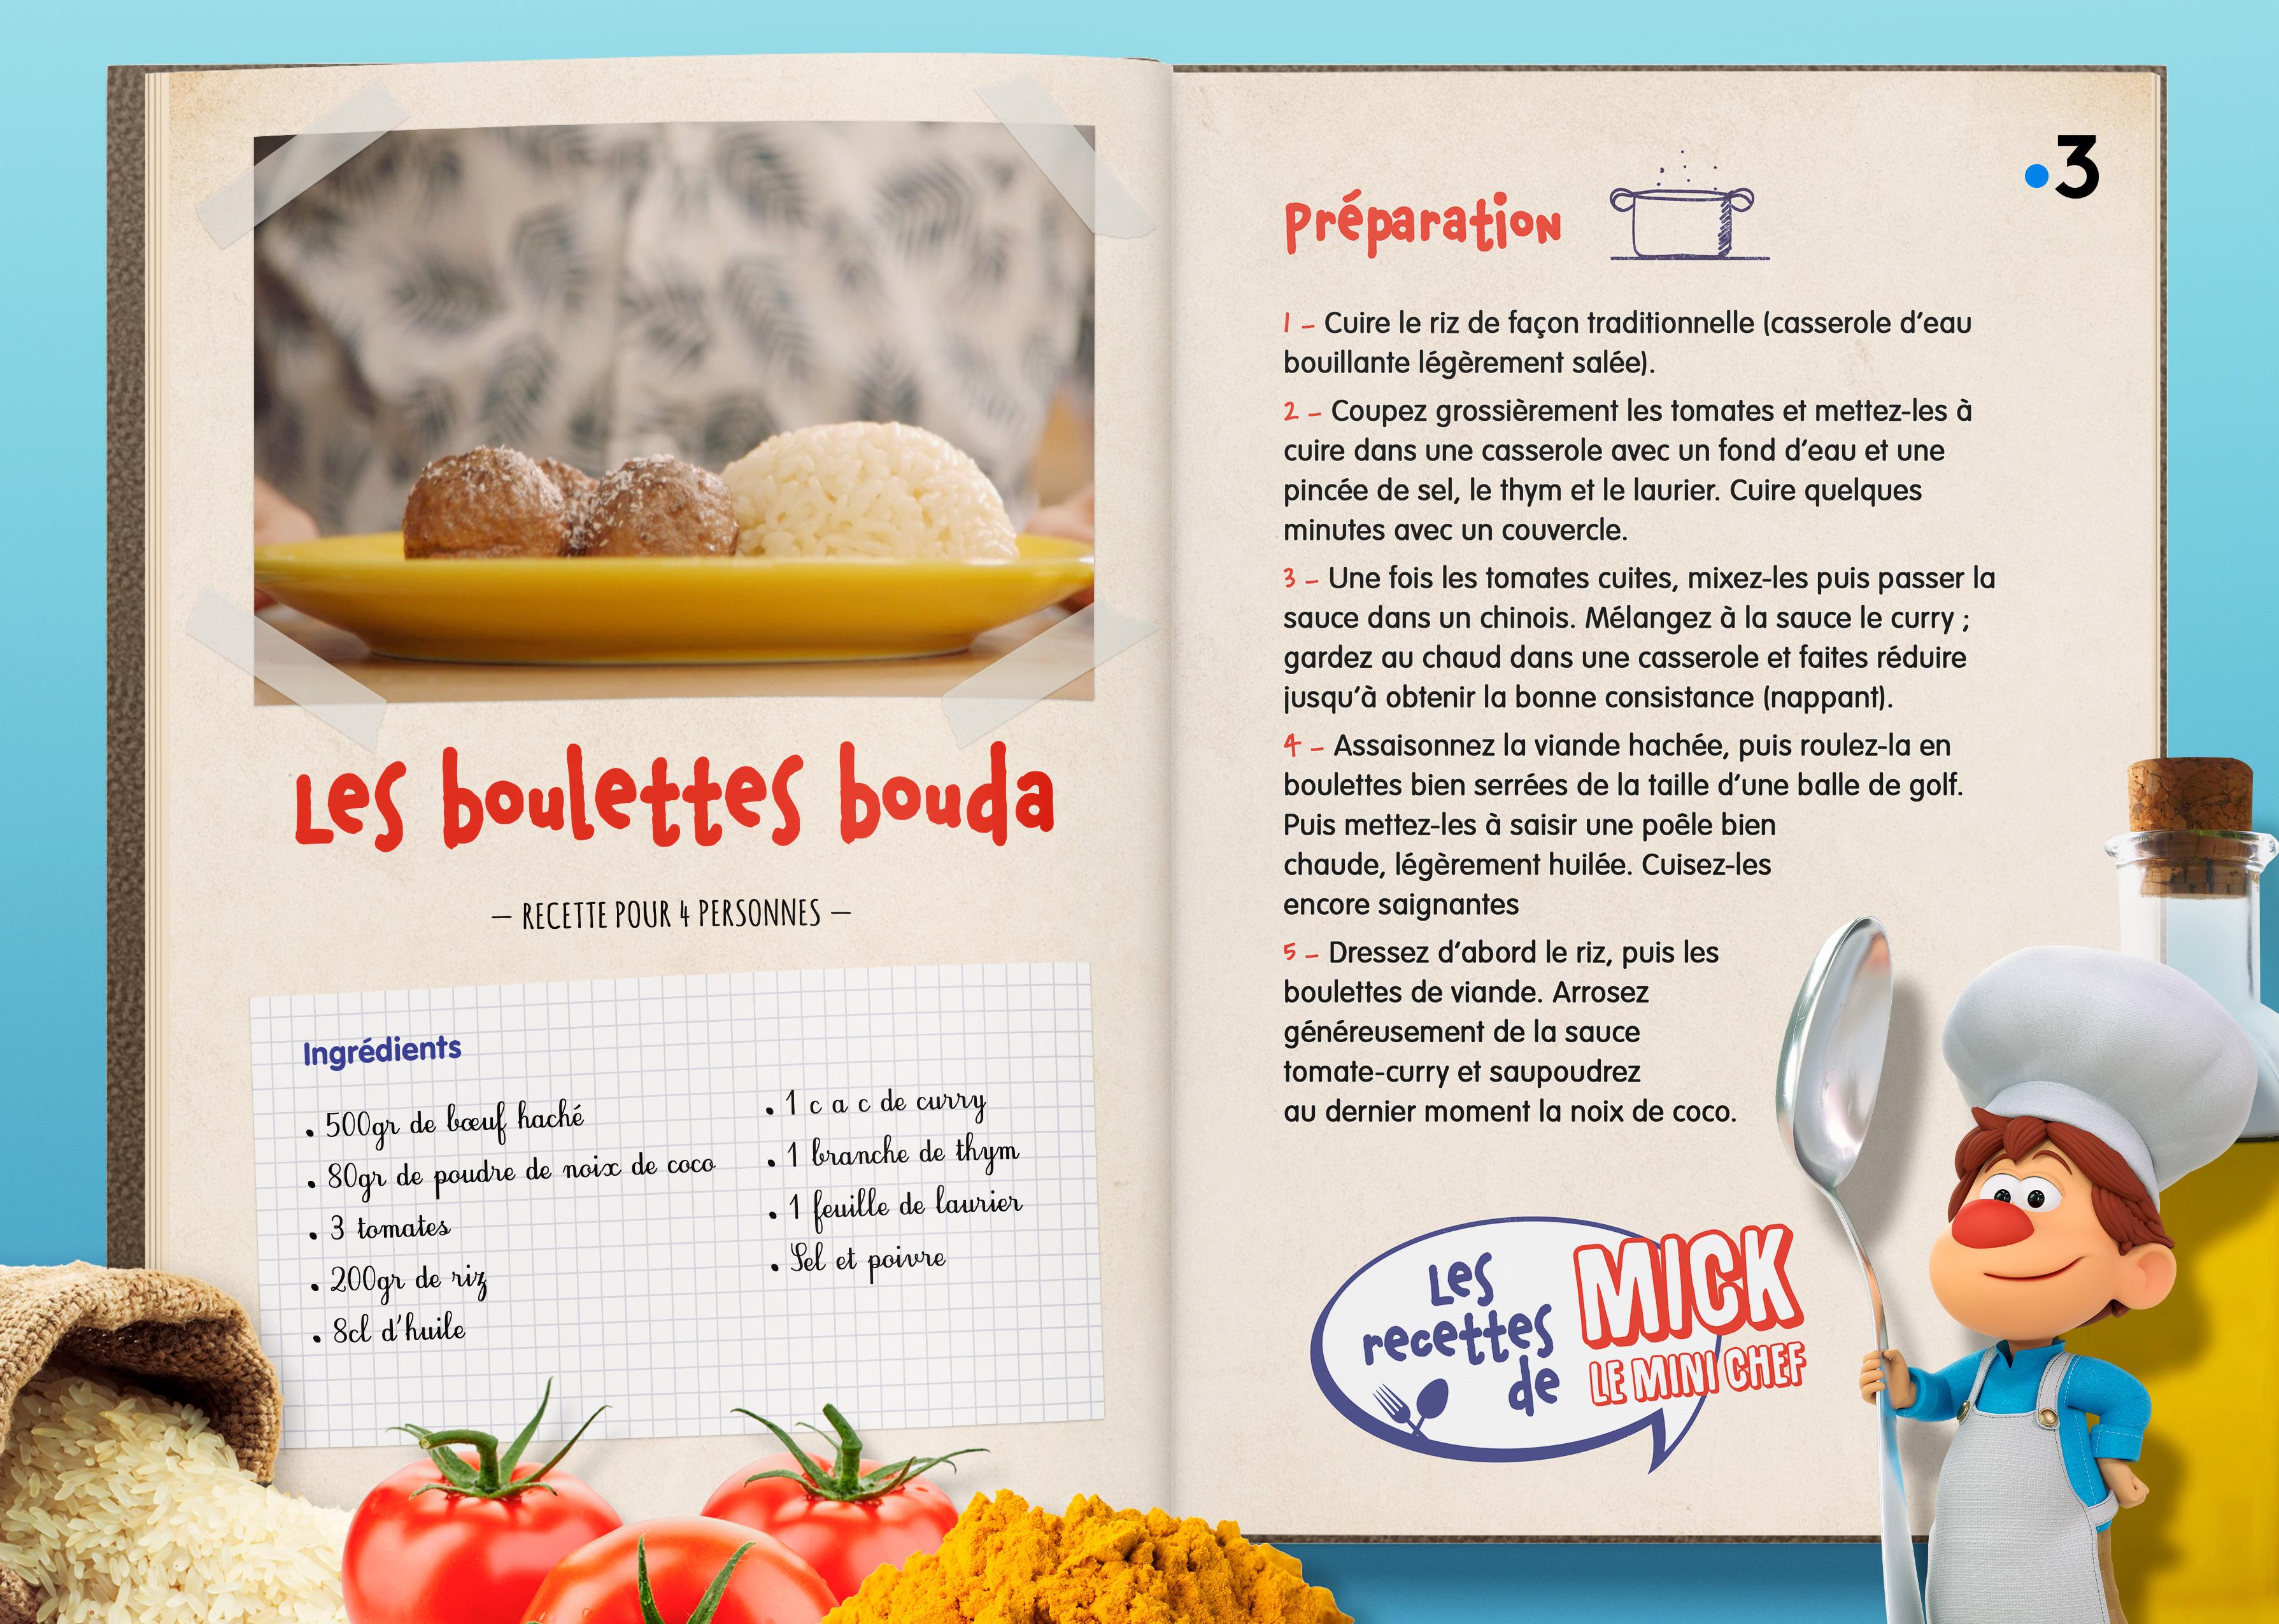 La recette des Boulettes Bouda. [Studio Redfrog - AnimationsFabrik]